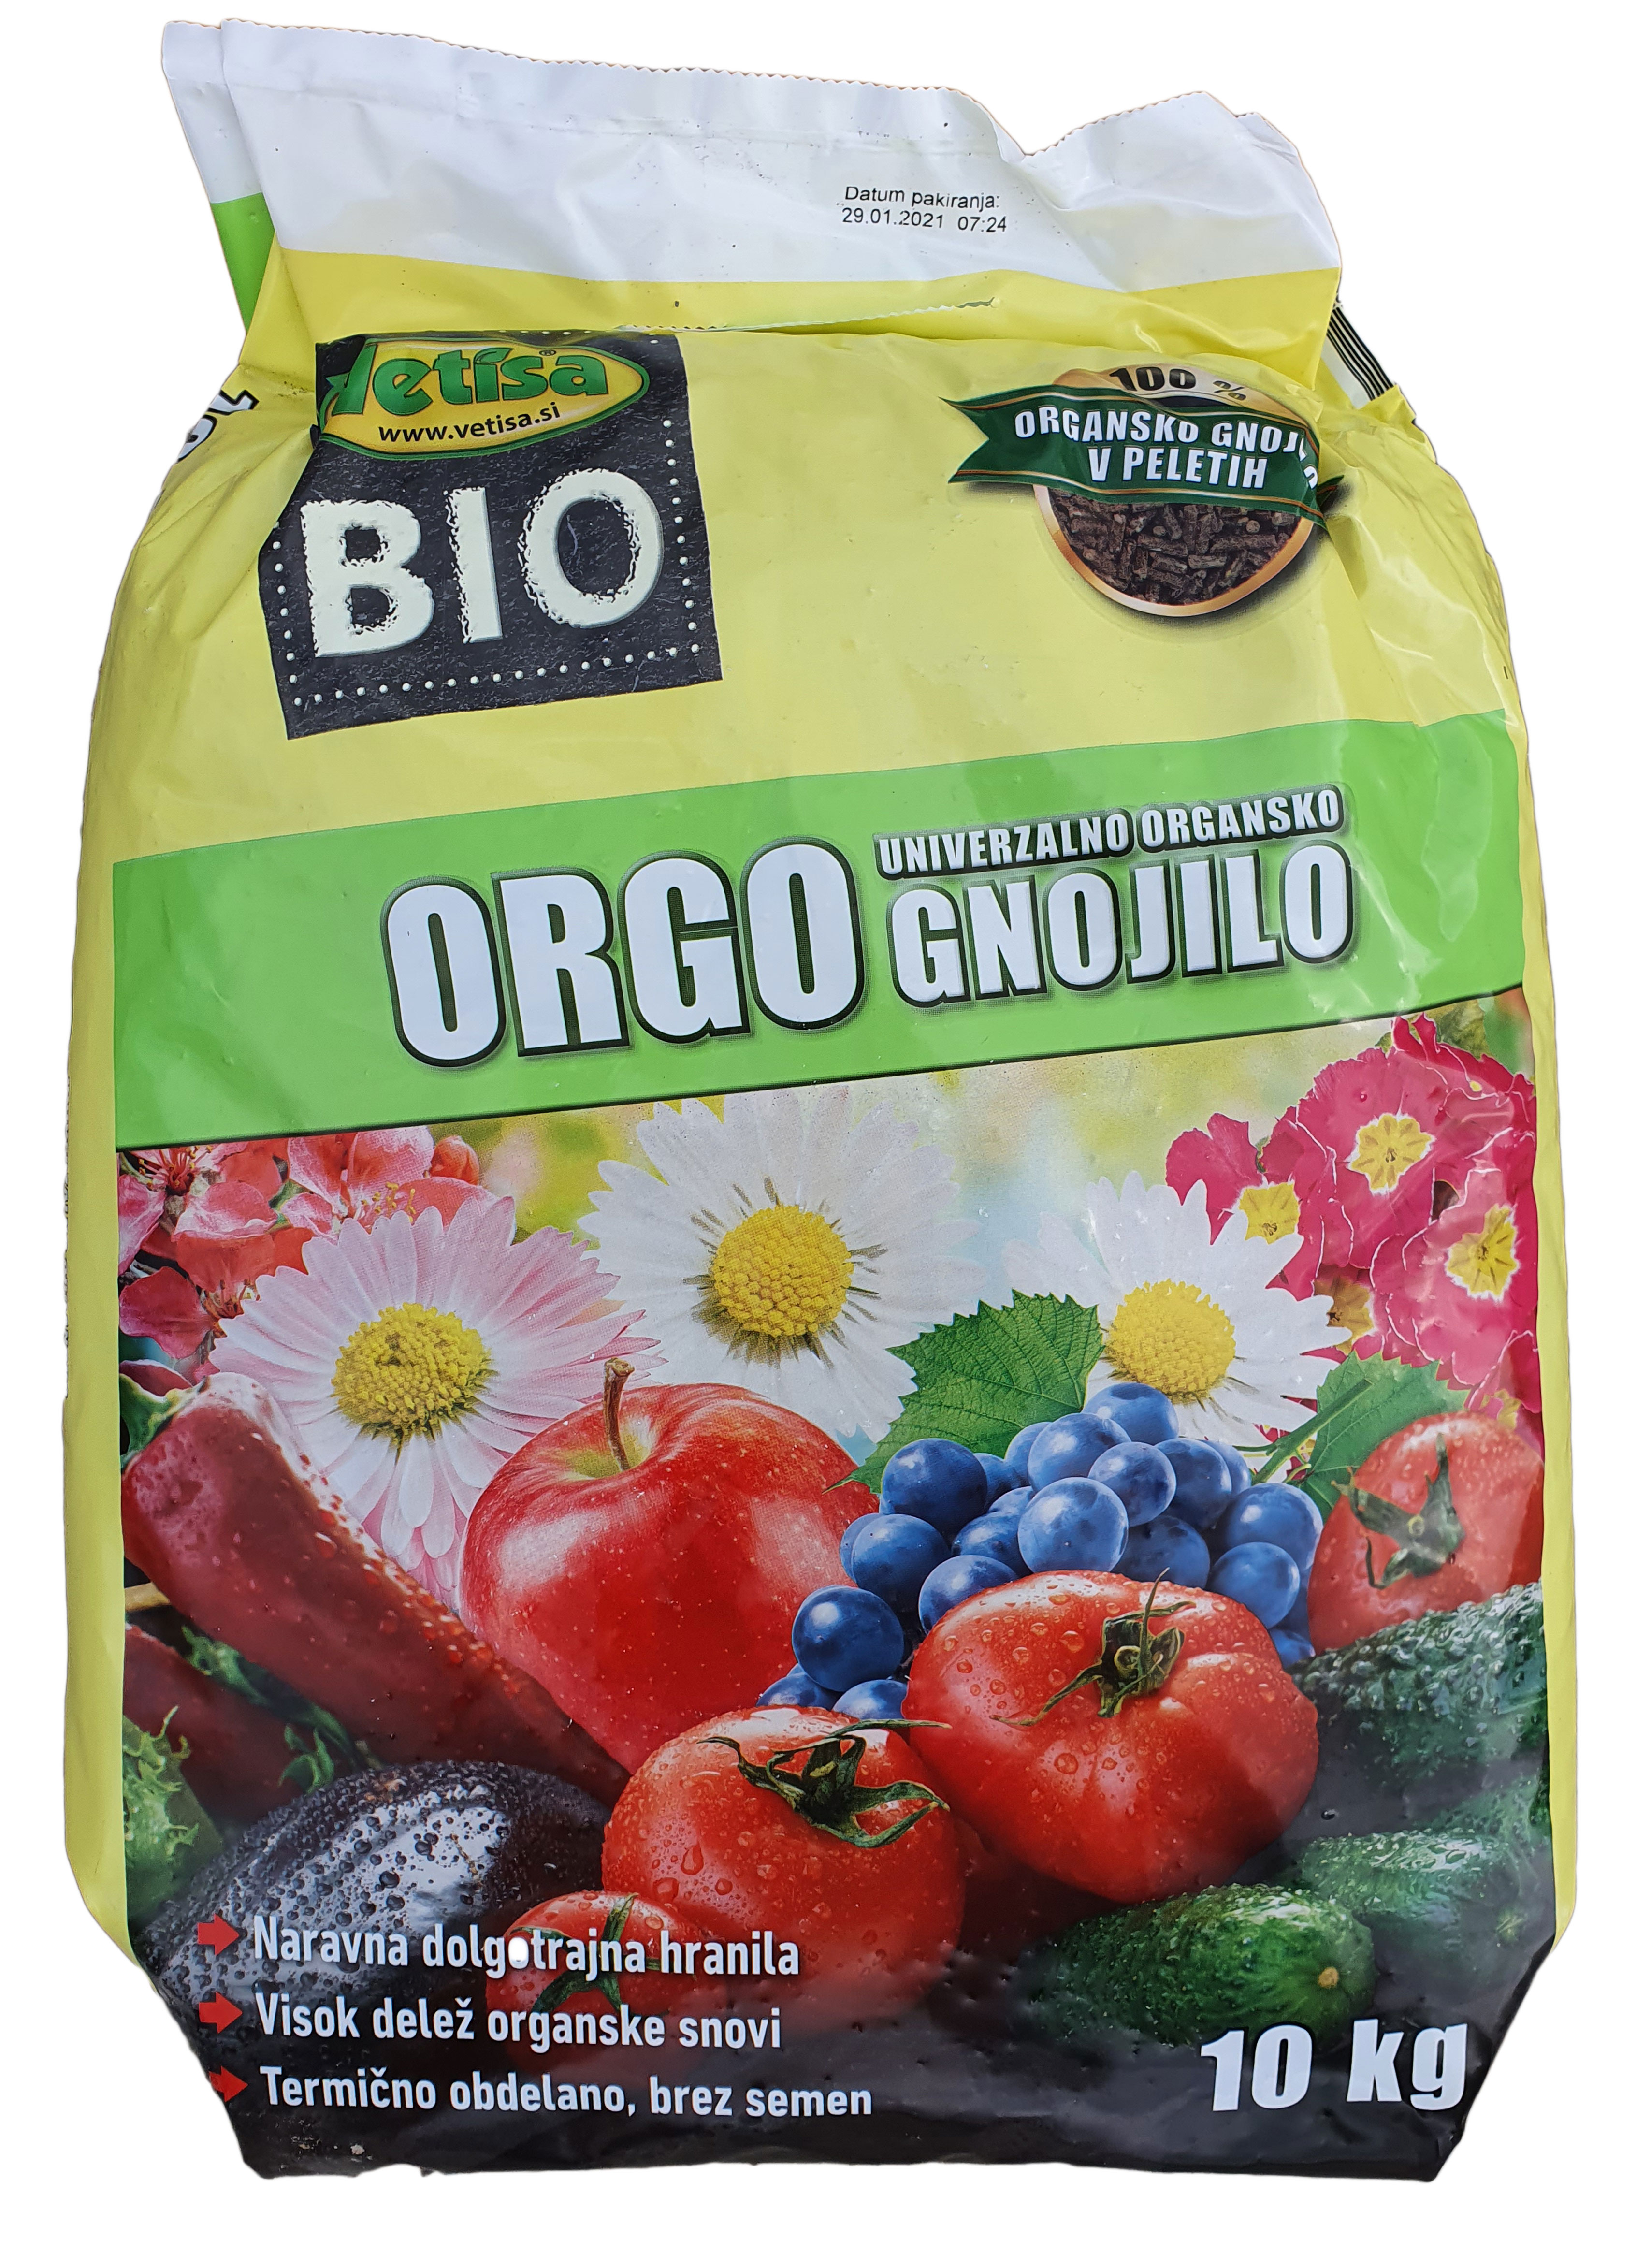 VETISA-ORGO 10 kg- 100% organsko gnojivo za vrt-KAT.2.(60/pal)